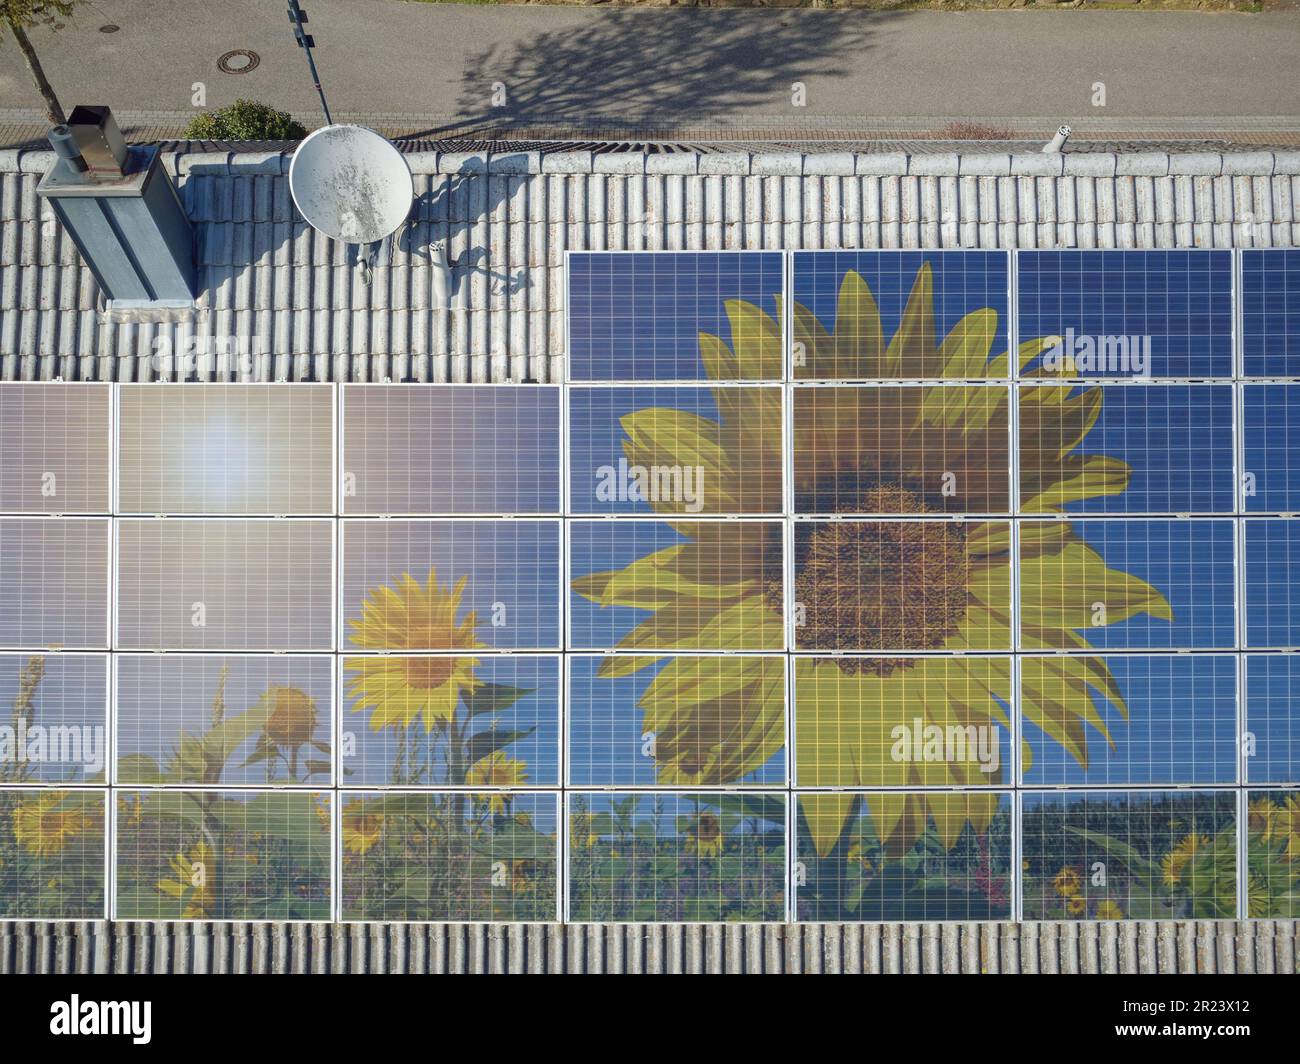 Photovoltaikpaneele älterer Bauart auf einem Hausdach, fotografiert mit einer Drohne. Sonnenblumen werden in den Paneelen als Symbol für grüne Elektrik dargestellt Stockfoto